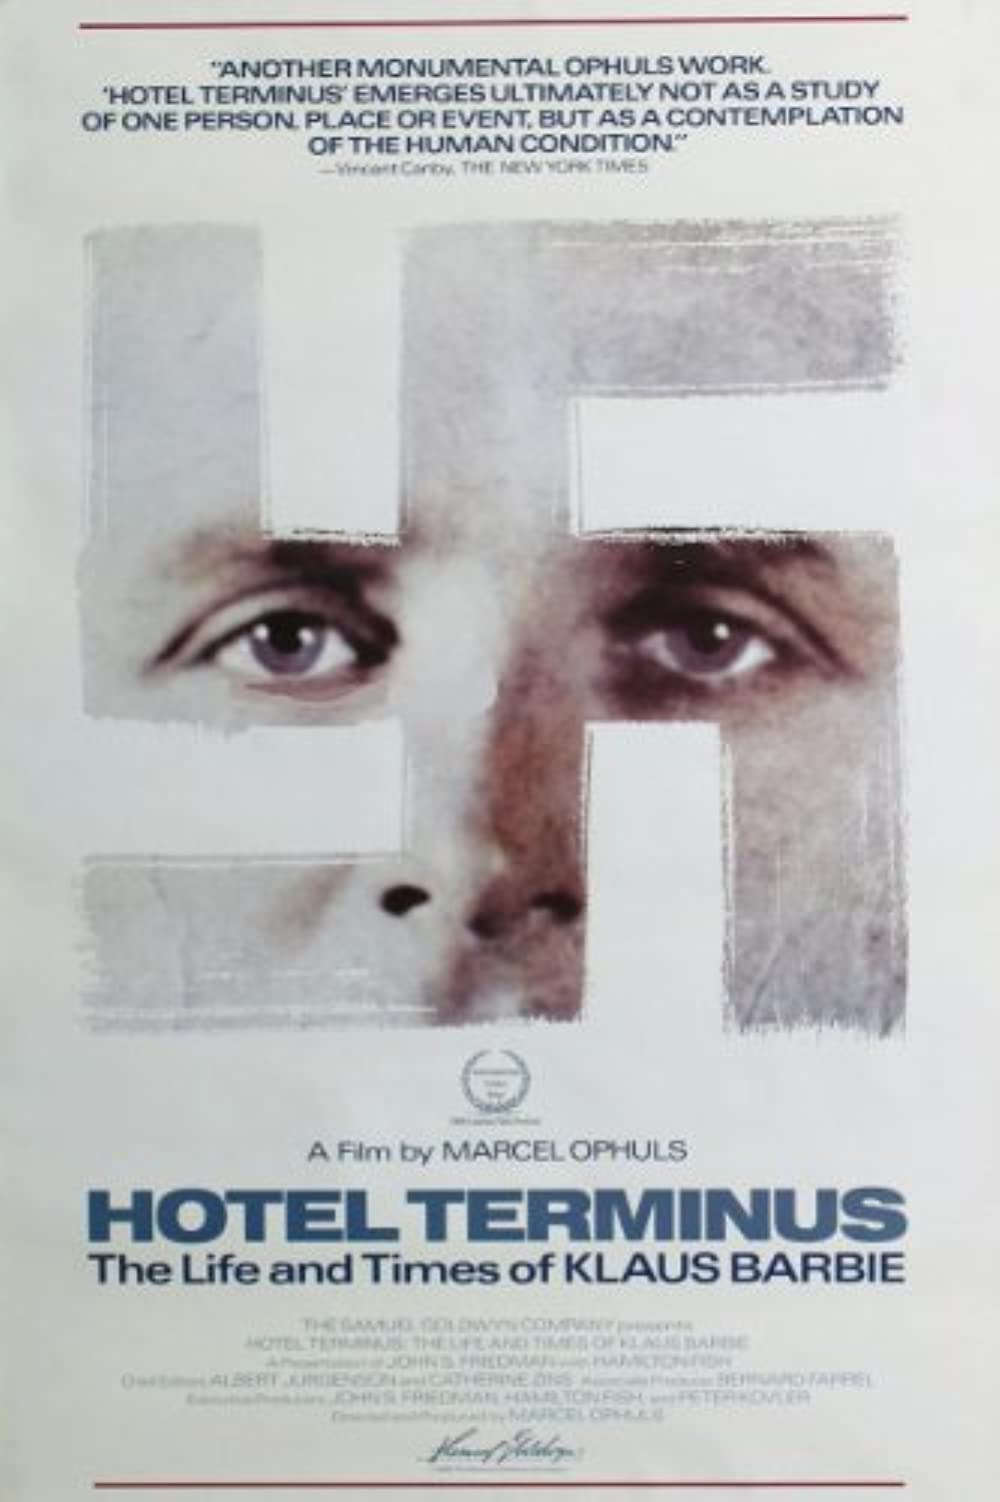 Filmbeschreibung zu Hotel Terminus - Leben und Zeit von Klaus Barbie